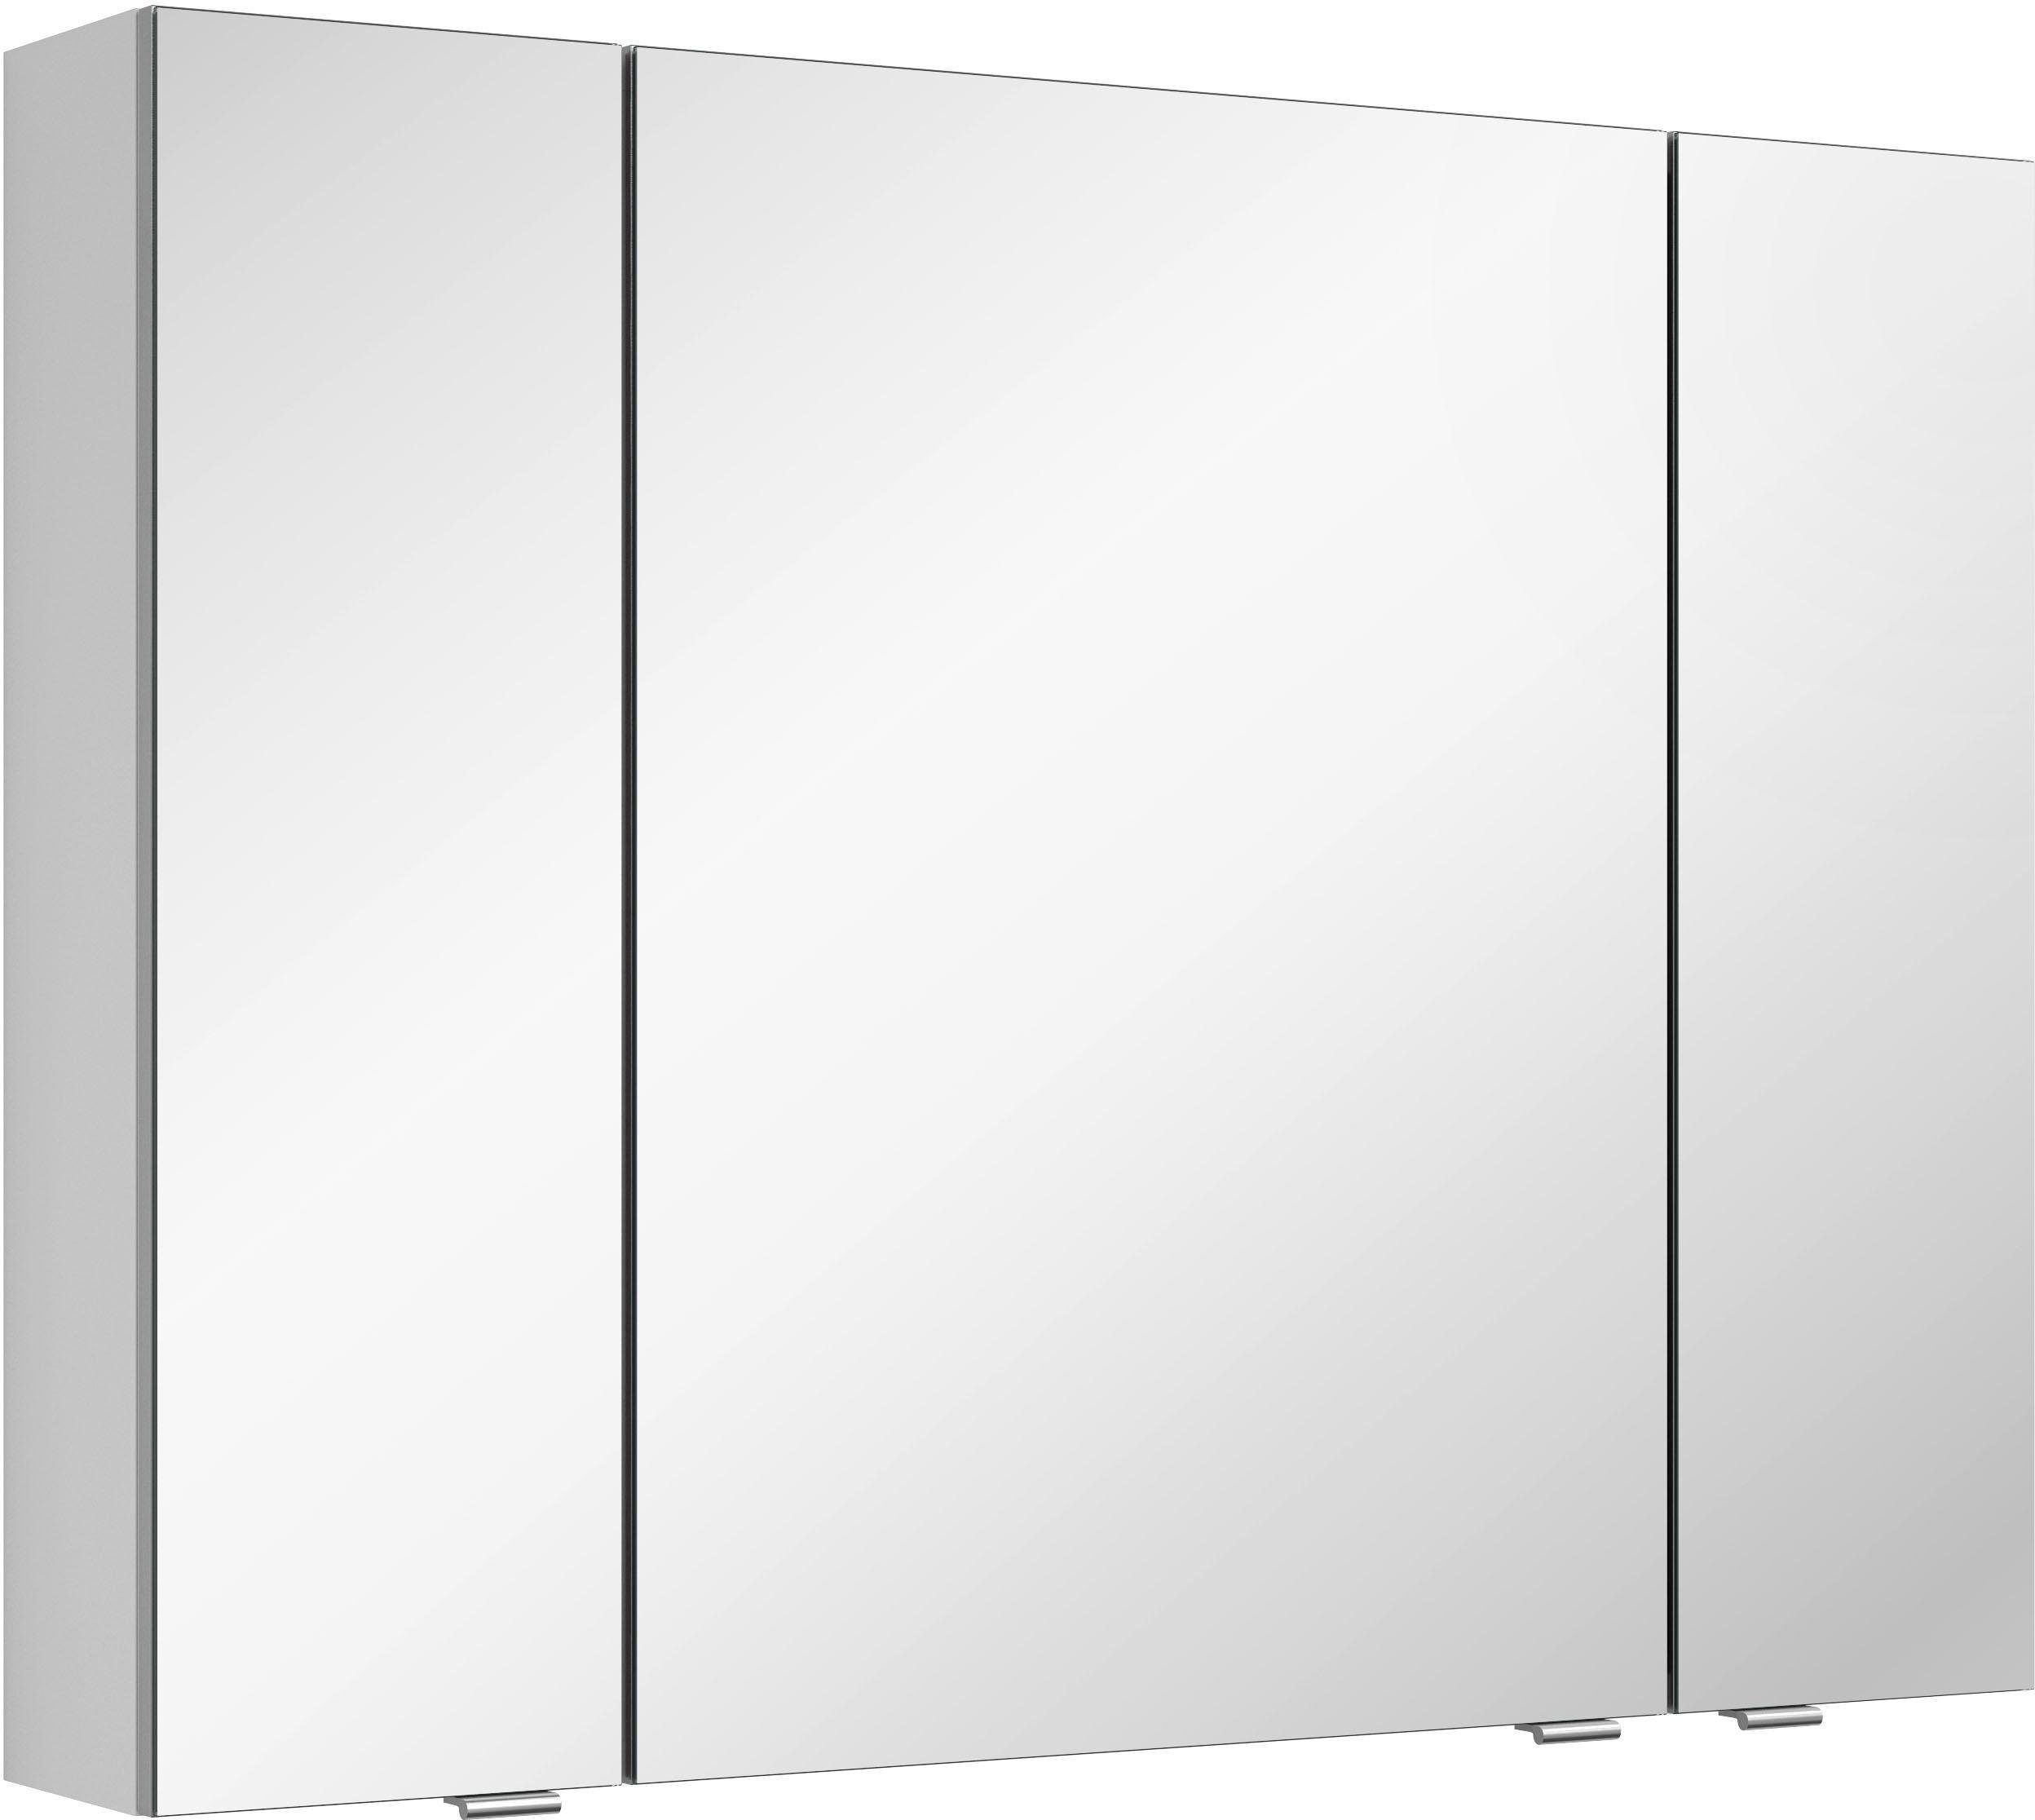 MARLIN Spiegelschrank mit verspiegelten Türen, vormontiert 3980 doppelseitig